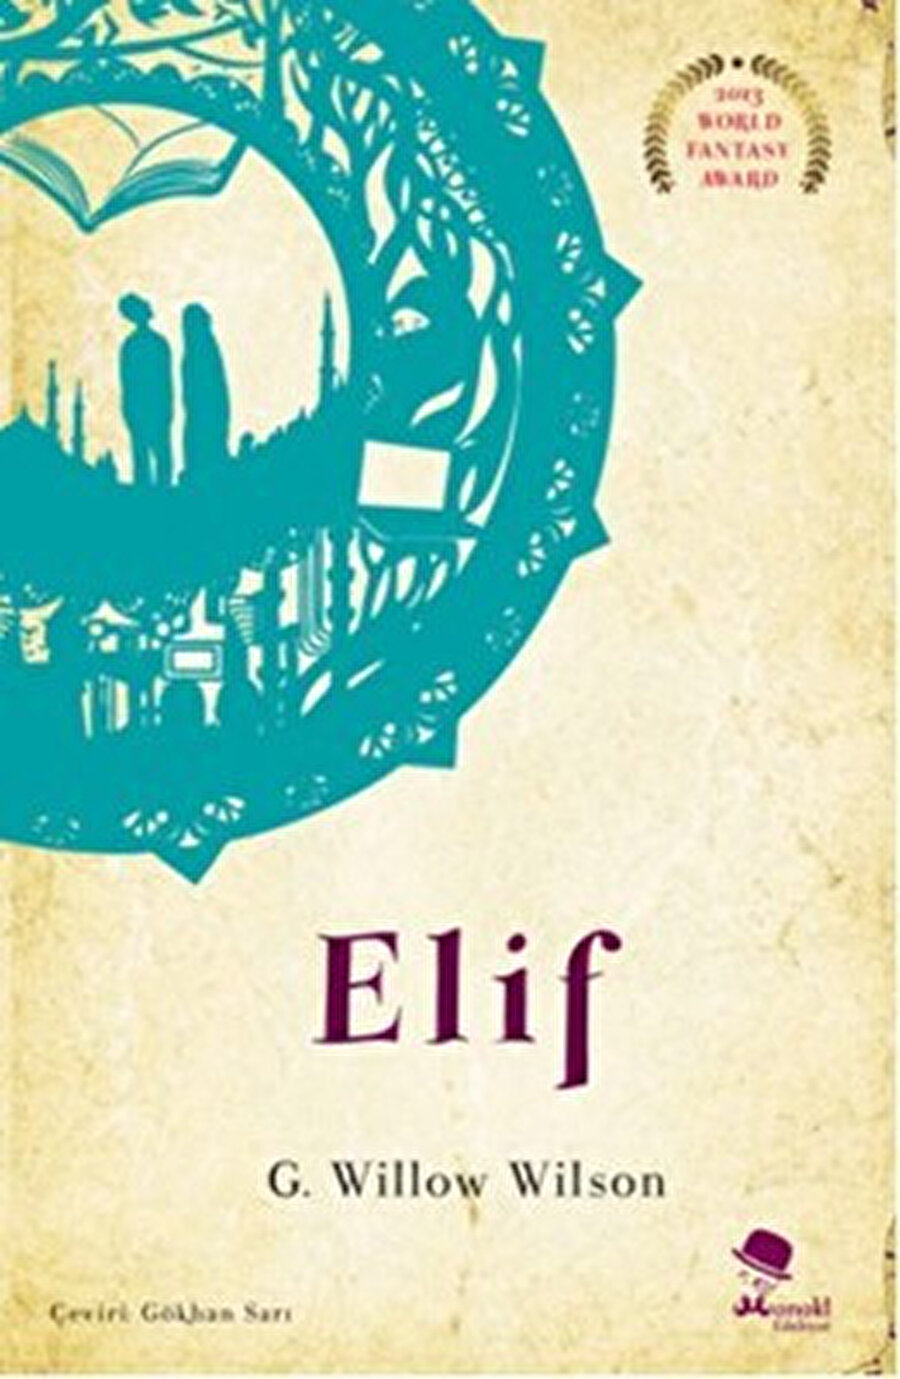 2013 yılında fantastik edebiyat dalında ödül alan Arap/Afgan bir hacker’ı anlatan romanı Elif’i yazdı. 